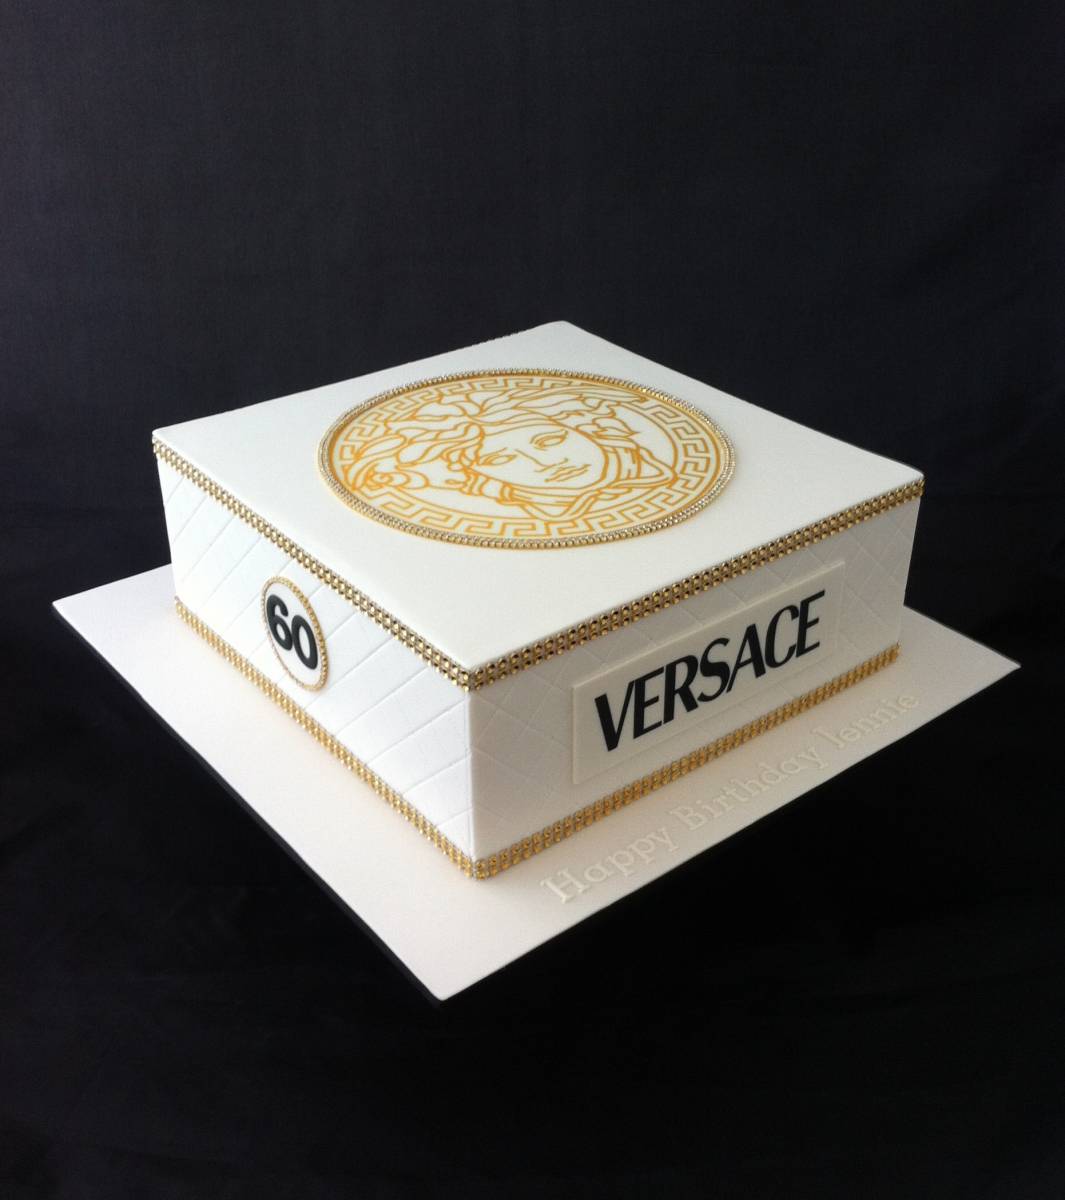 Details more than 121 versace logo cake latest - kidsdream.edu.vn